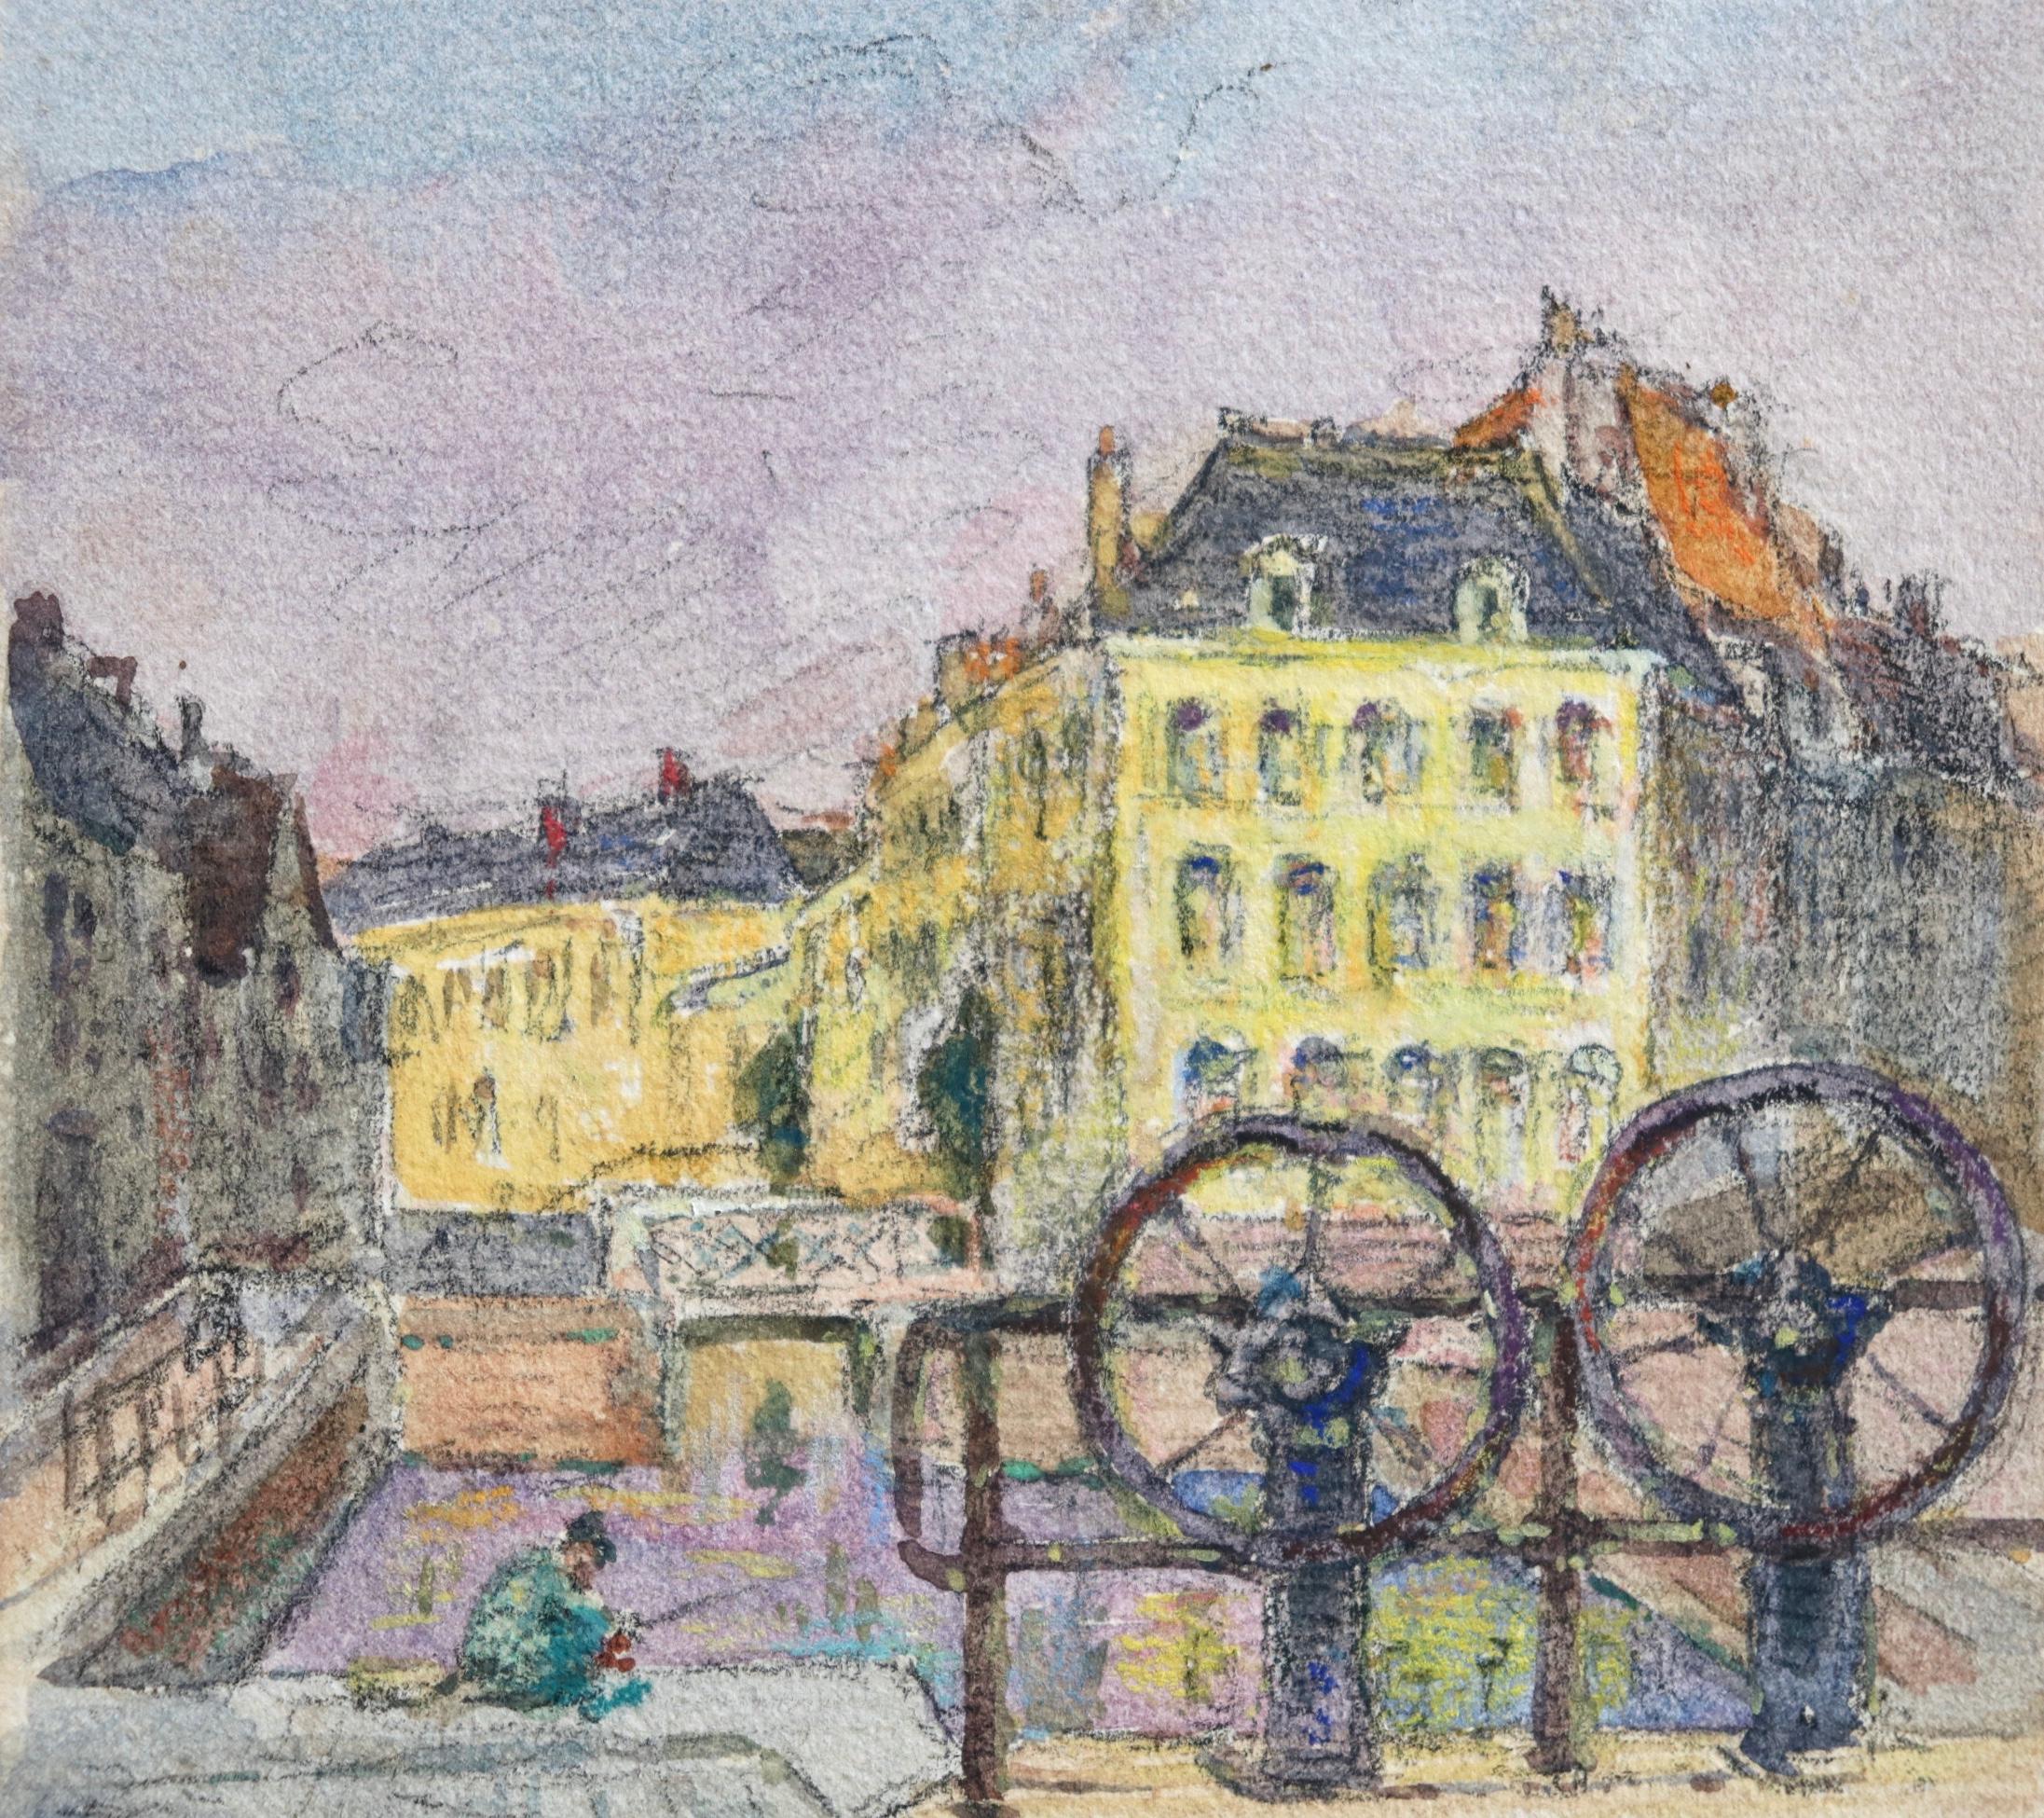 Ein schönes Aquarell auf Papier um 1908 des französischen impressionistischen Malers Henri Duhem, das einen Mann darstellt, der abends im Kanal von Douai angelt. Signiert unten links. Dieses Stück ist derzeit nicht gerahmt, aber ein passender Rahmen